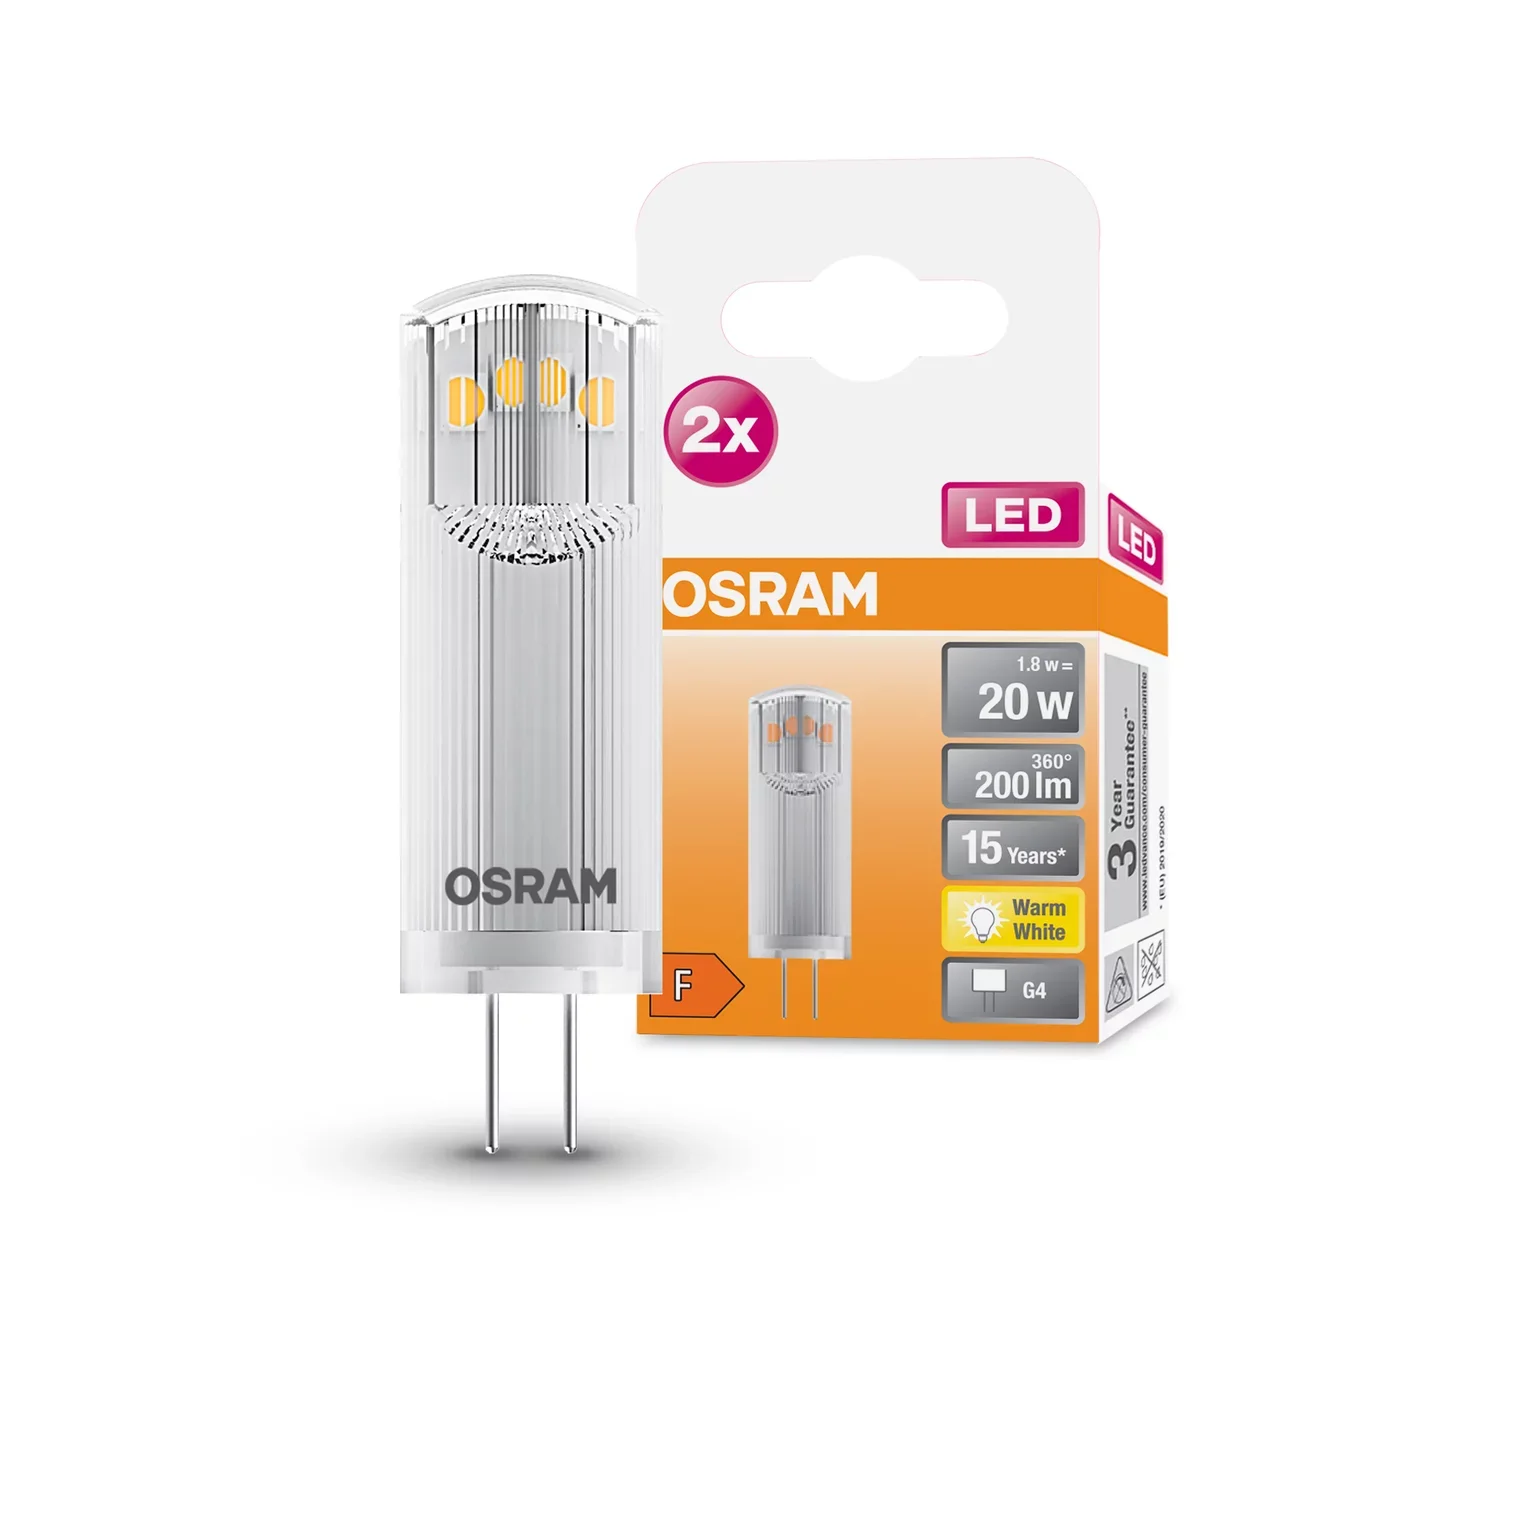 OSRAM LED kapsulinė lemputė PIN 20, G4, 1,8W, 2700 K, 200 lm, šiltai baltos sp. - 3